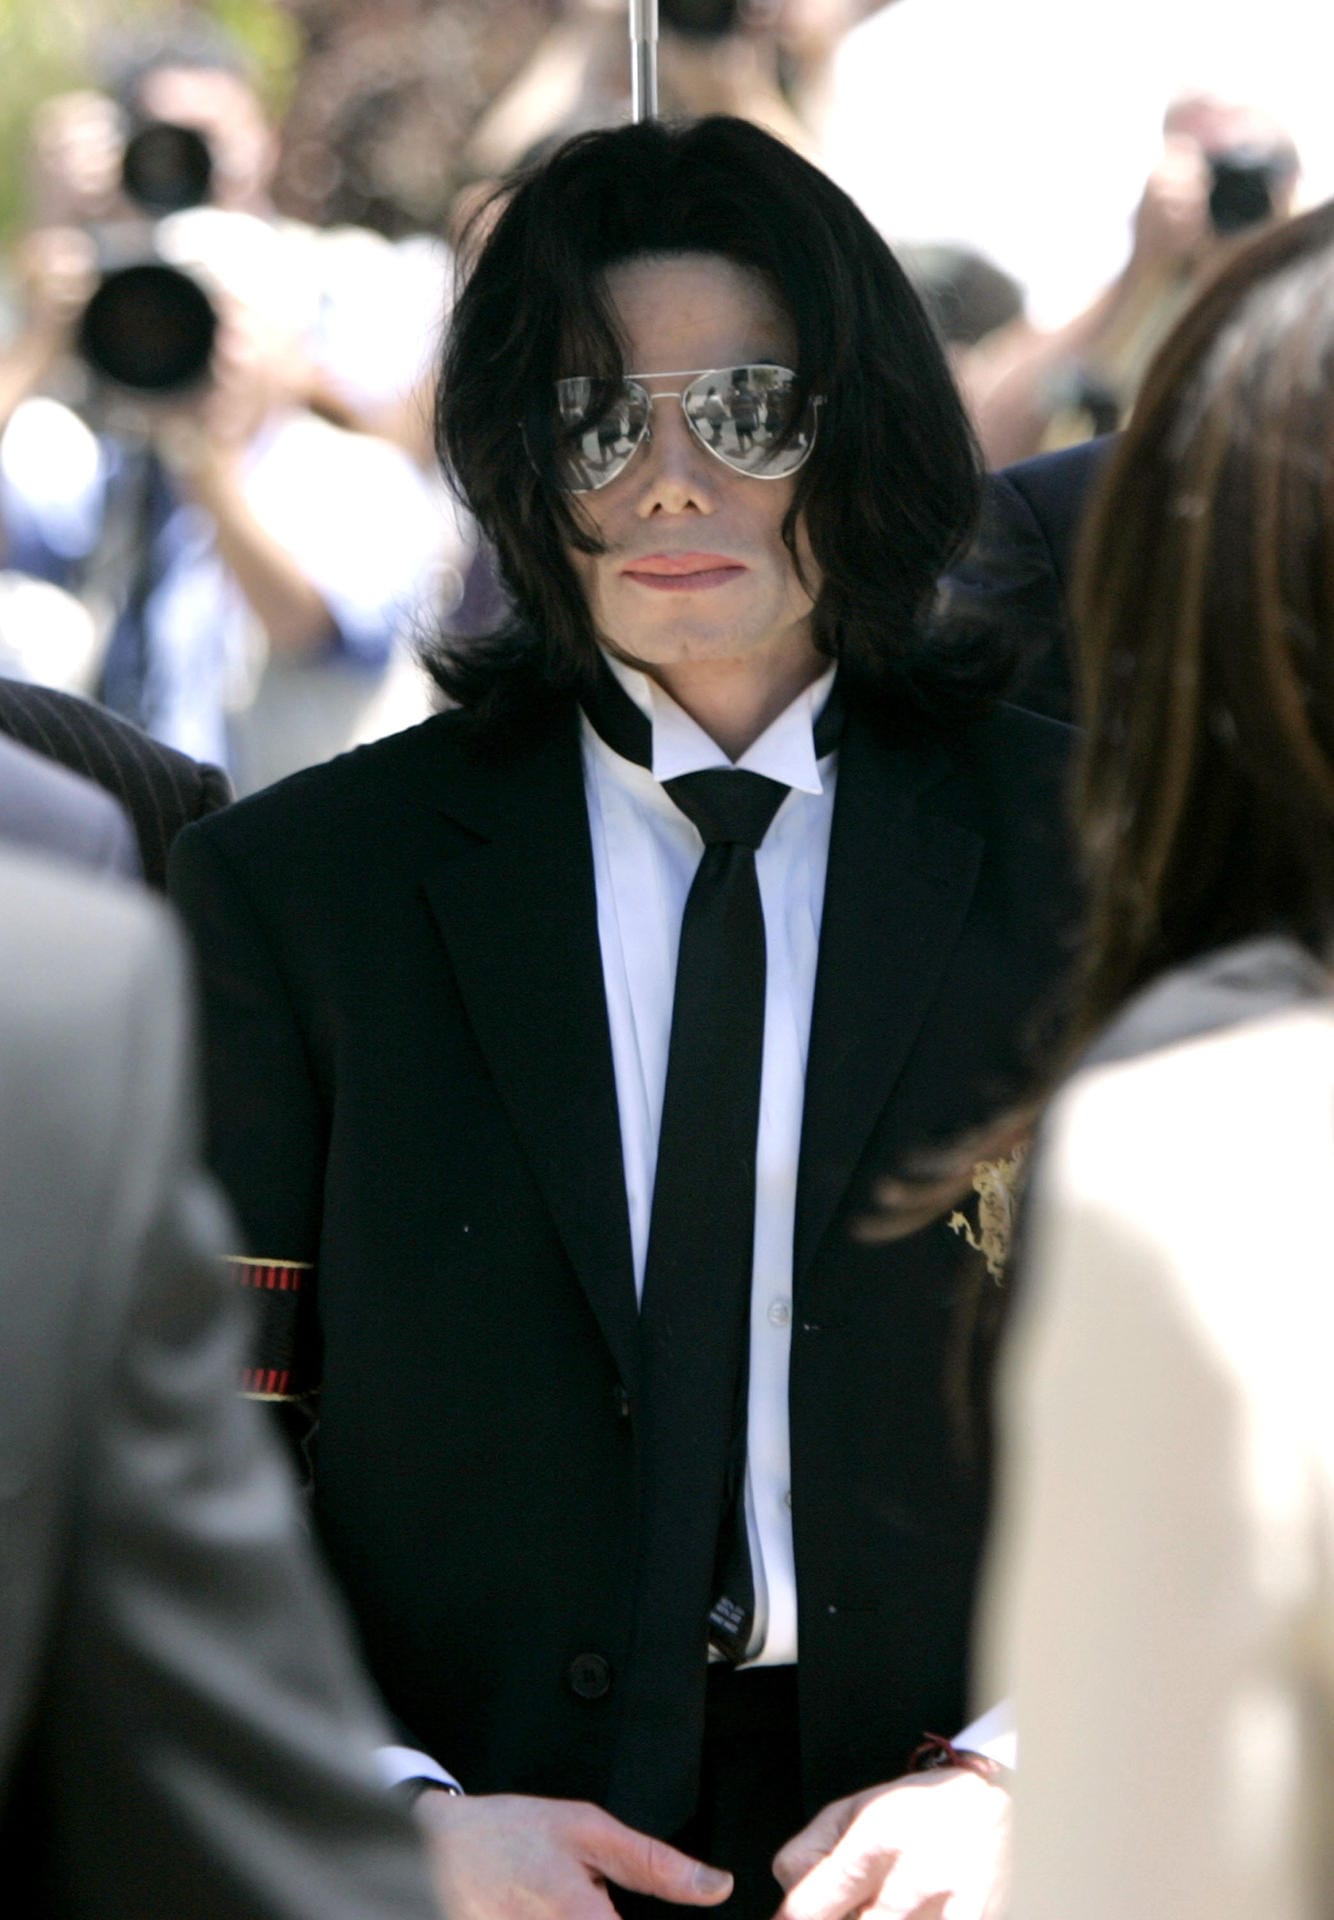 Michael Jackson: Der verstorbene Sänger sagte mal zum Magazin "Bunte": "Ich weiß wirklich nicht, warum man immer auf mich zeigt. Wissen Sie, ich habe nur meine Nase operieren lassen. Aber man tut so, als wäre bei mir einfach alles operiert." Ein US-amerikanischer Schönheitschirurg behauptete hingegen 2003 in einem Interview, der Musiker hätte sein Gesicht mit "weit über 50 Operationen" verändert.